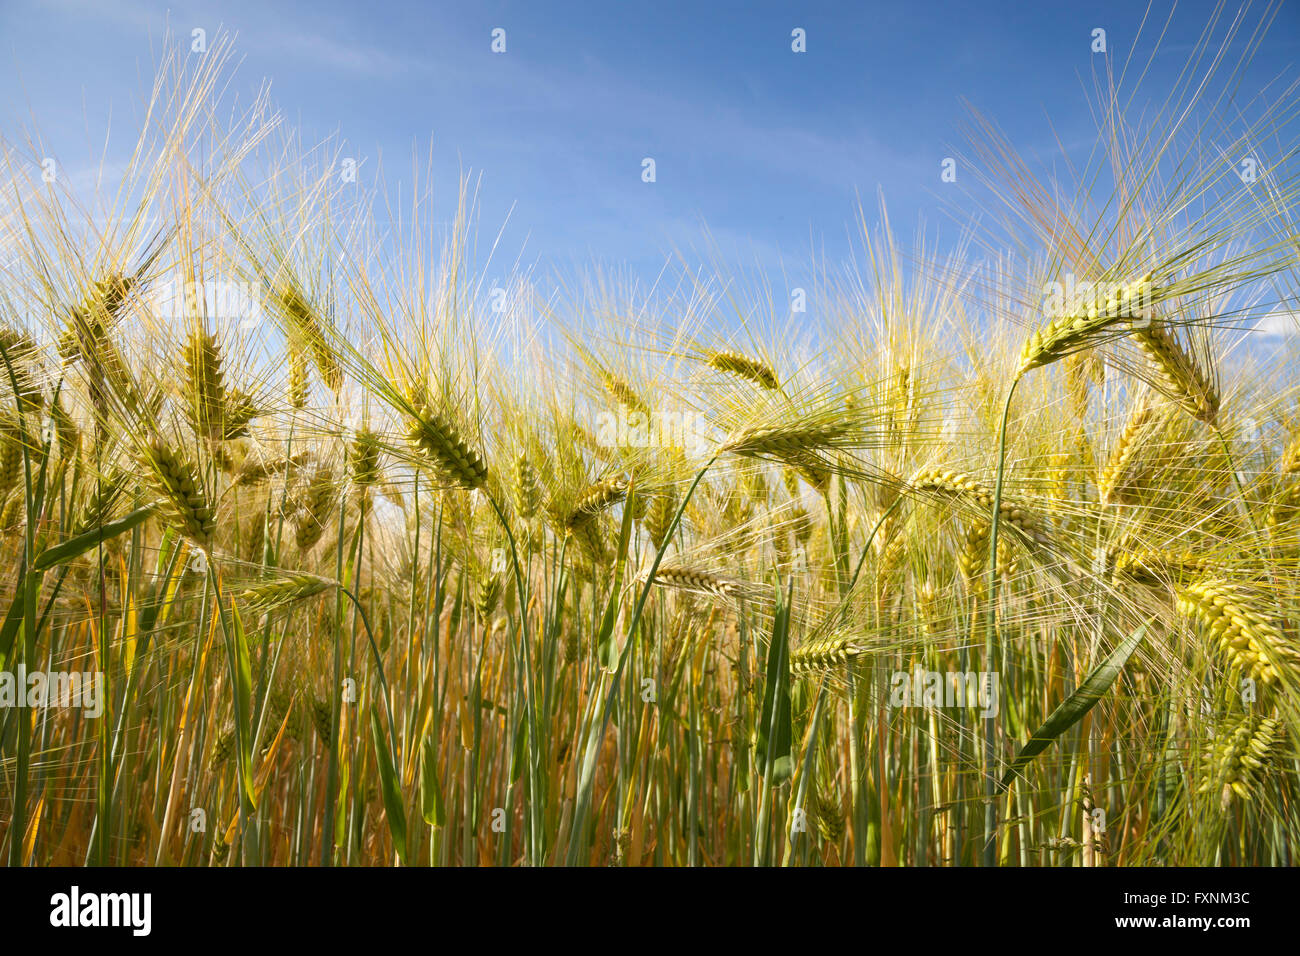 Barley (Hordeum vulgare), ears, field, North Rhine-Westphalia, Germany Stock Photo